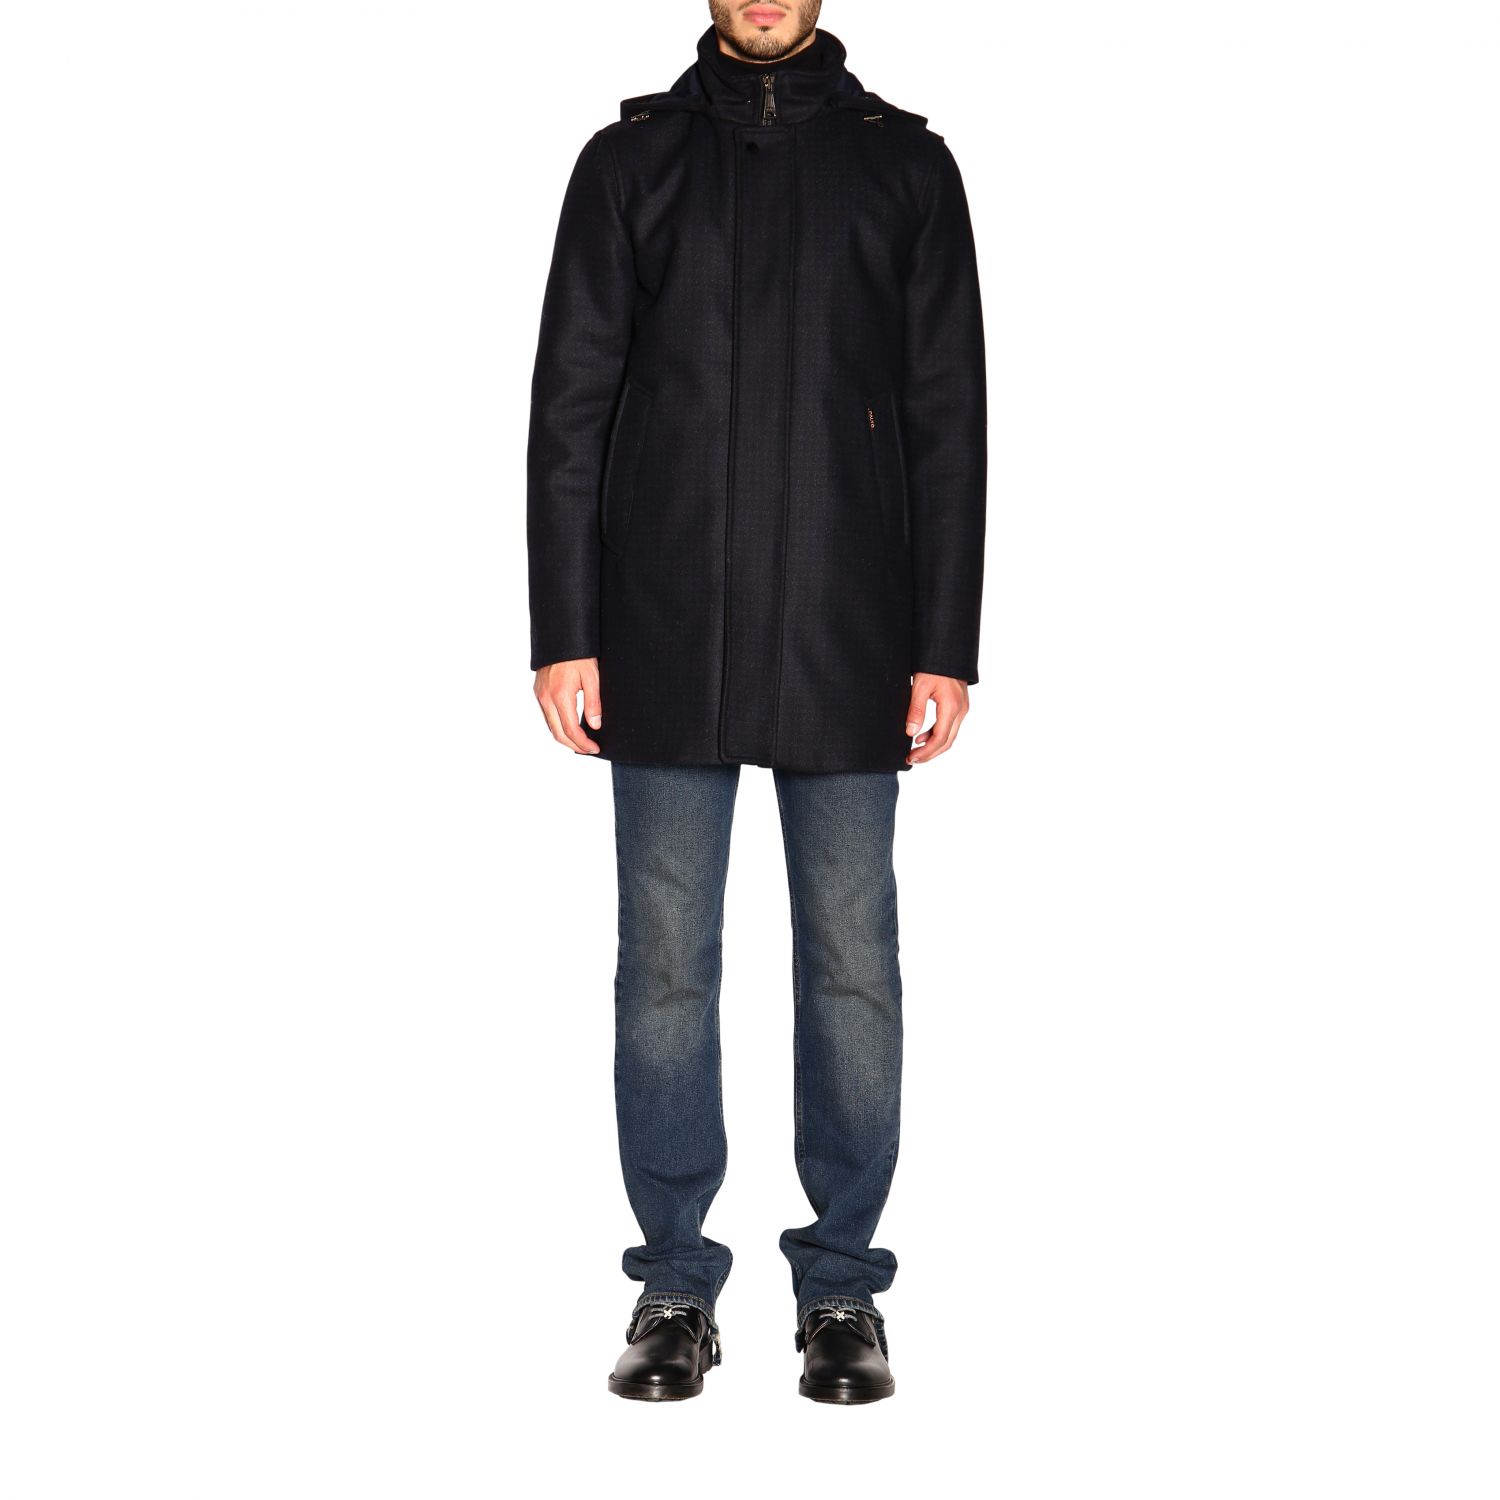 Palto' Outlet: coat for men - Black | Palto' coat ARGANTE MAINEJAC ...